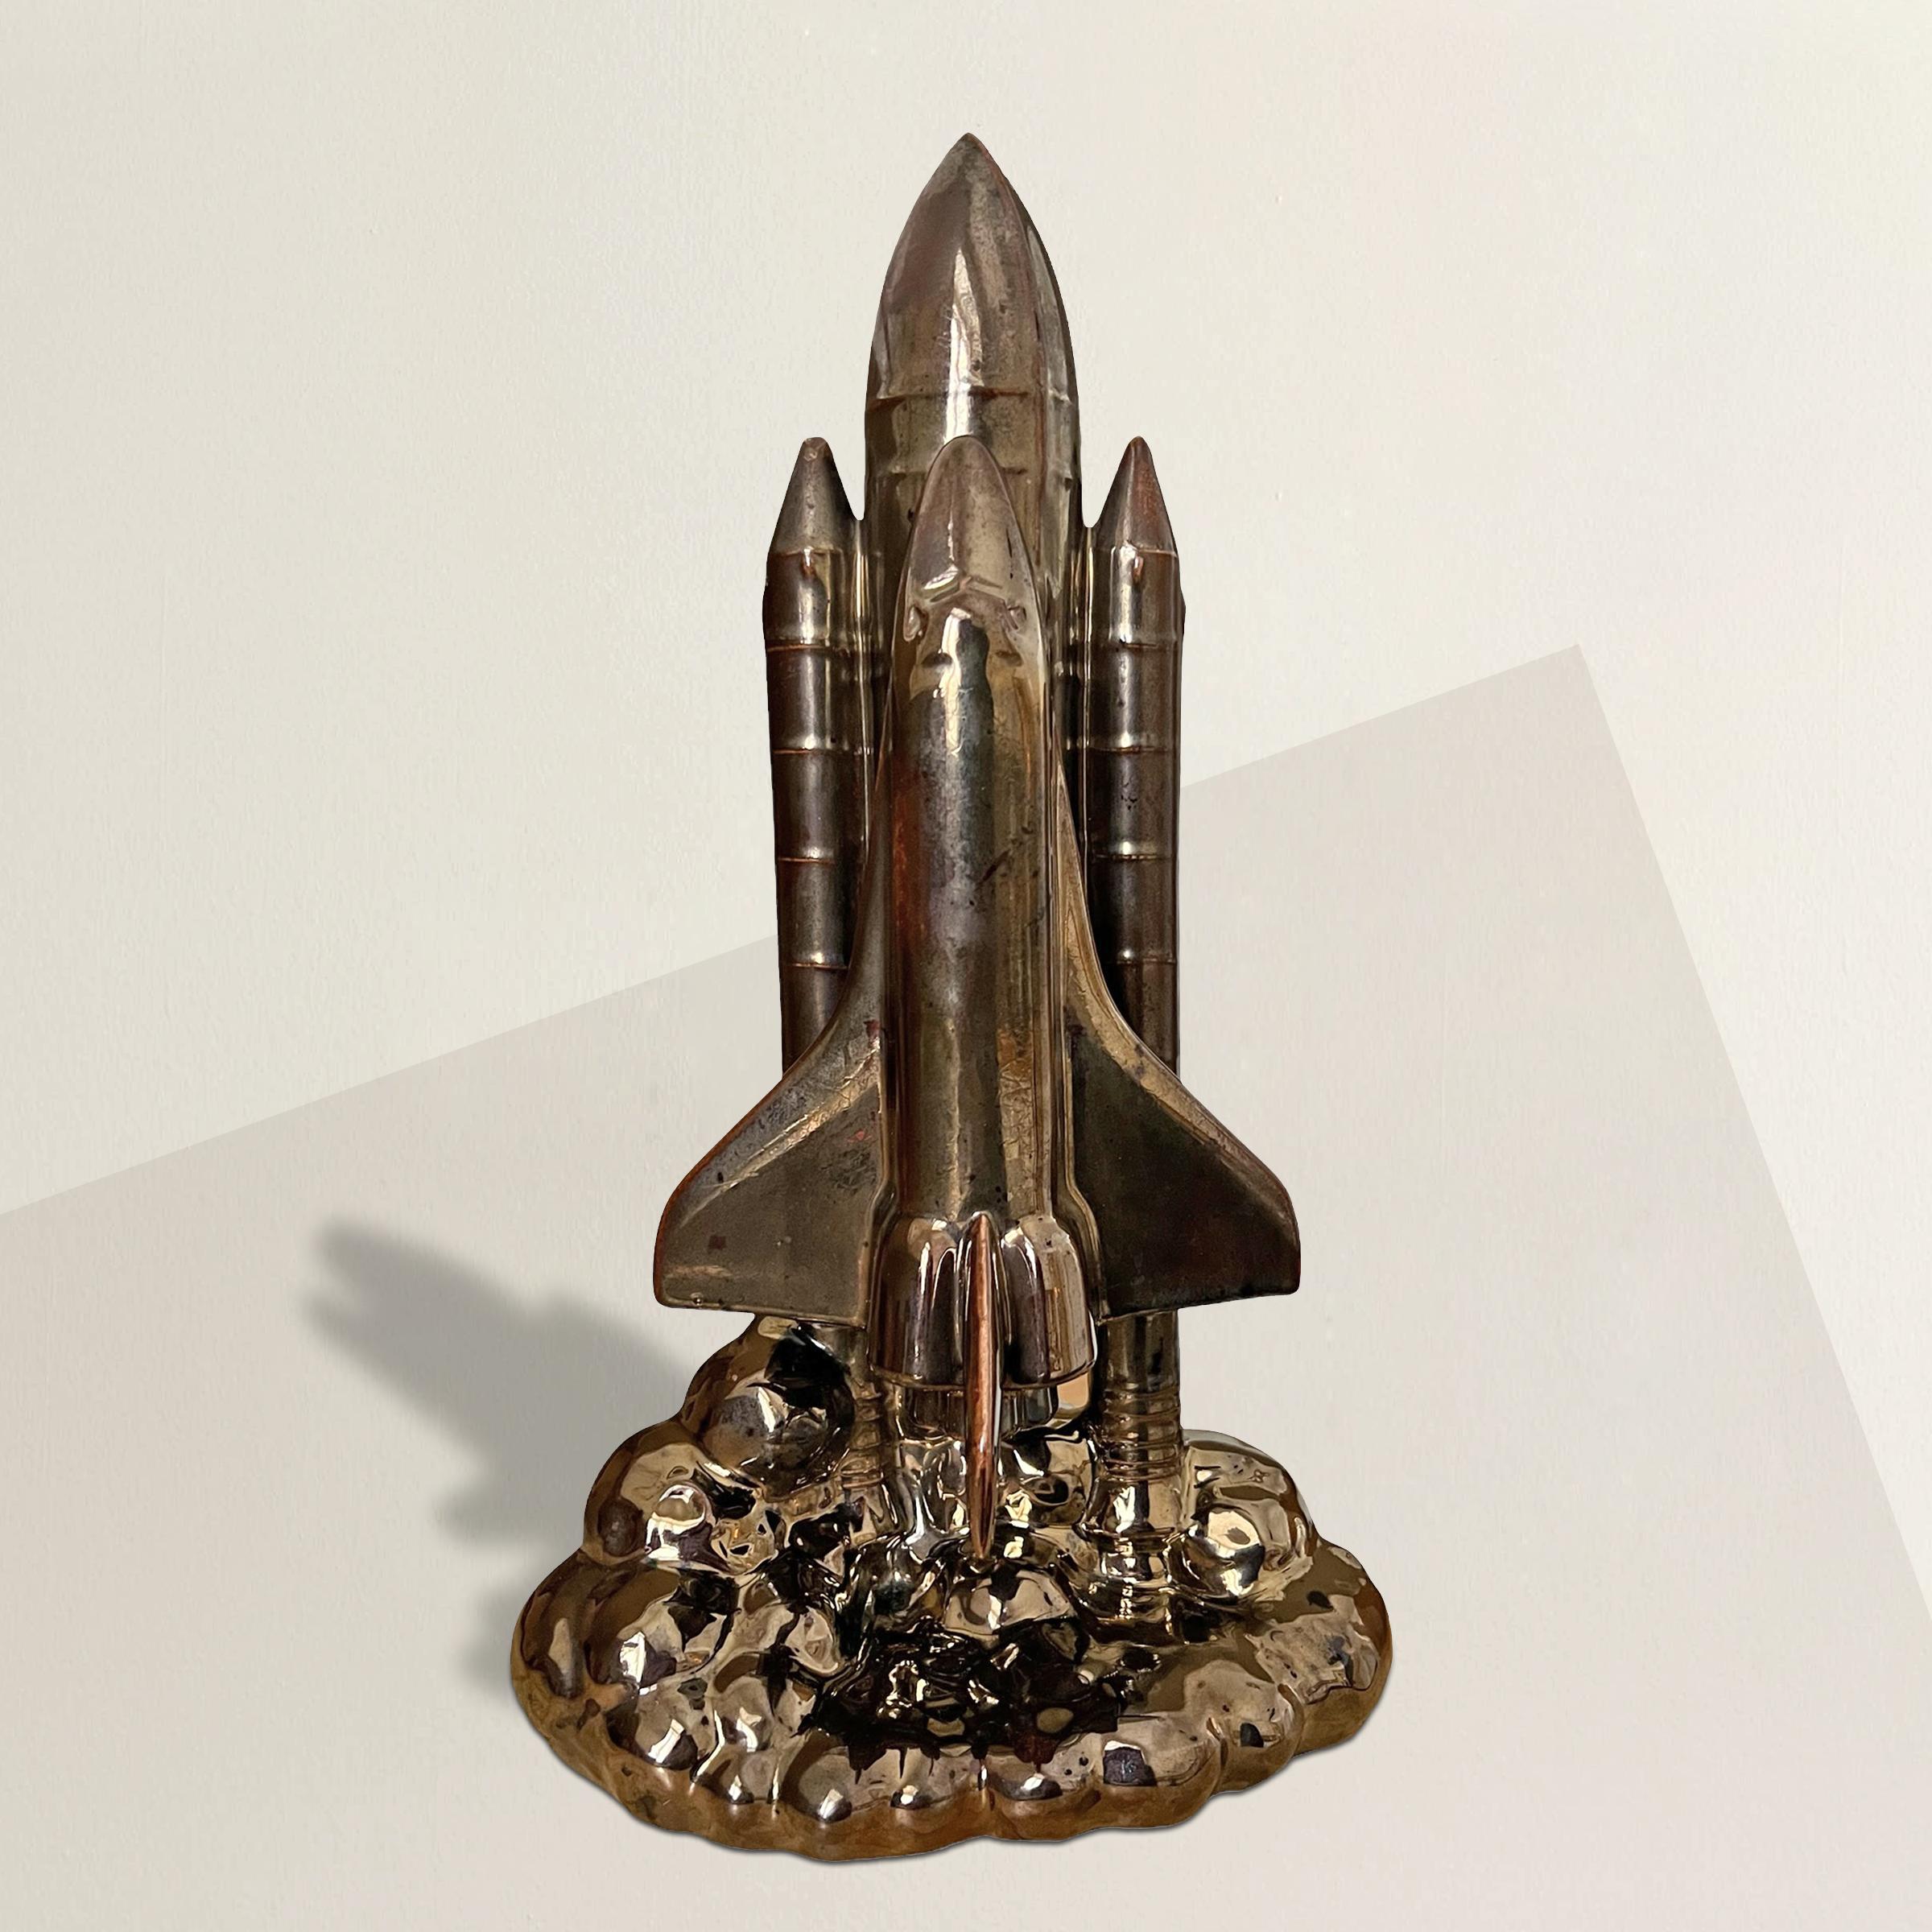 Diese amerikanische Porzellanskulptur aus der Mitte des 20. Jahrhunderts ist eine eindrucksvolle Ode an die Erforschung des Weltraums durch die NASA. Die Darstellung einer Raumfähre in der Anfangsphase des Starts zeigt, wie der Orbiter und die